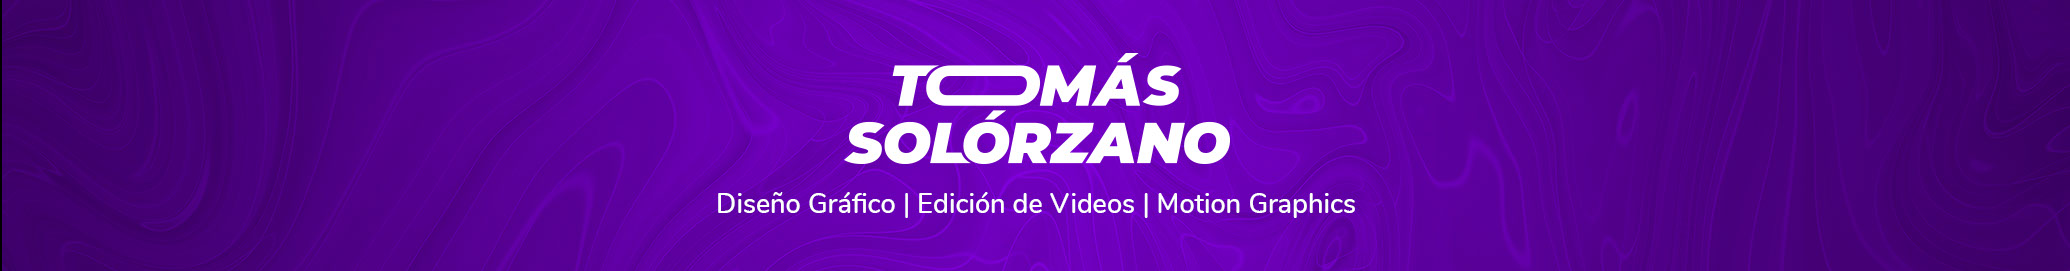 Tomás Solórzano's profile banner